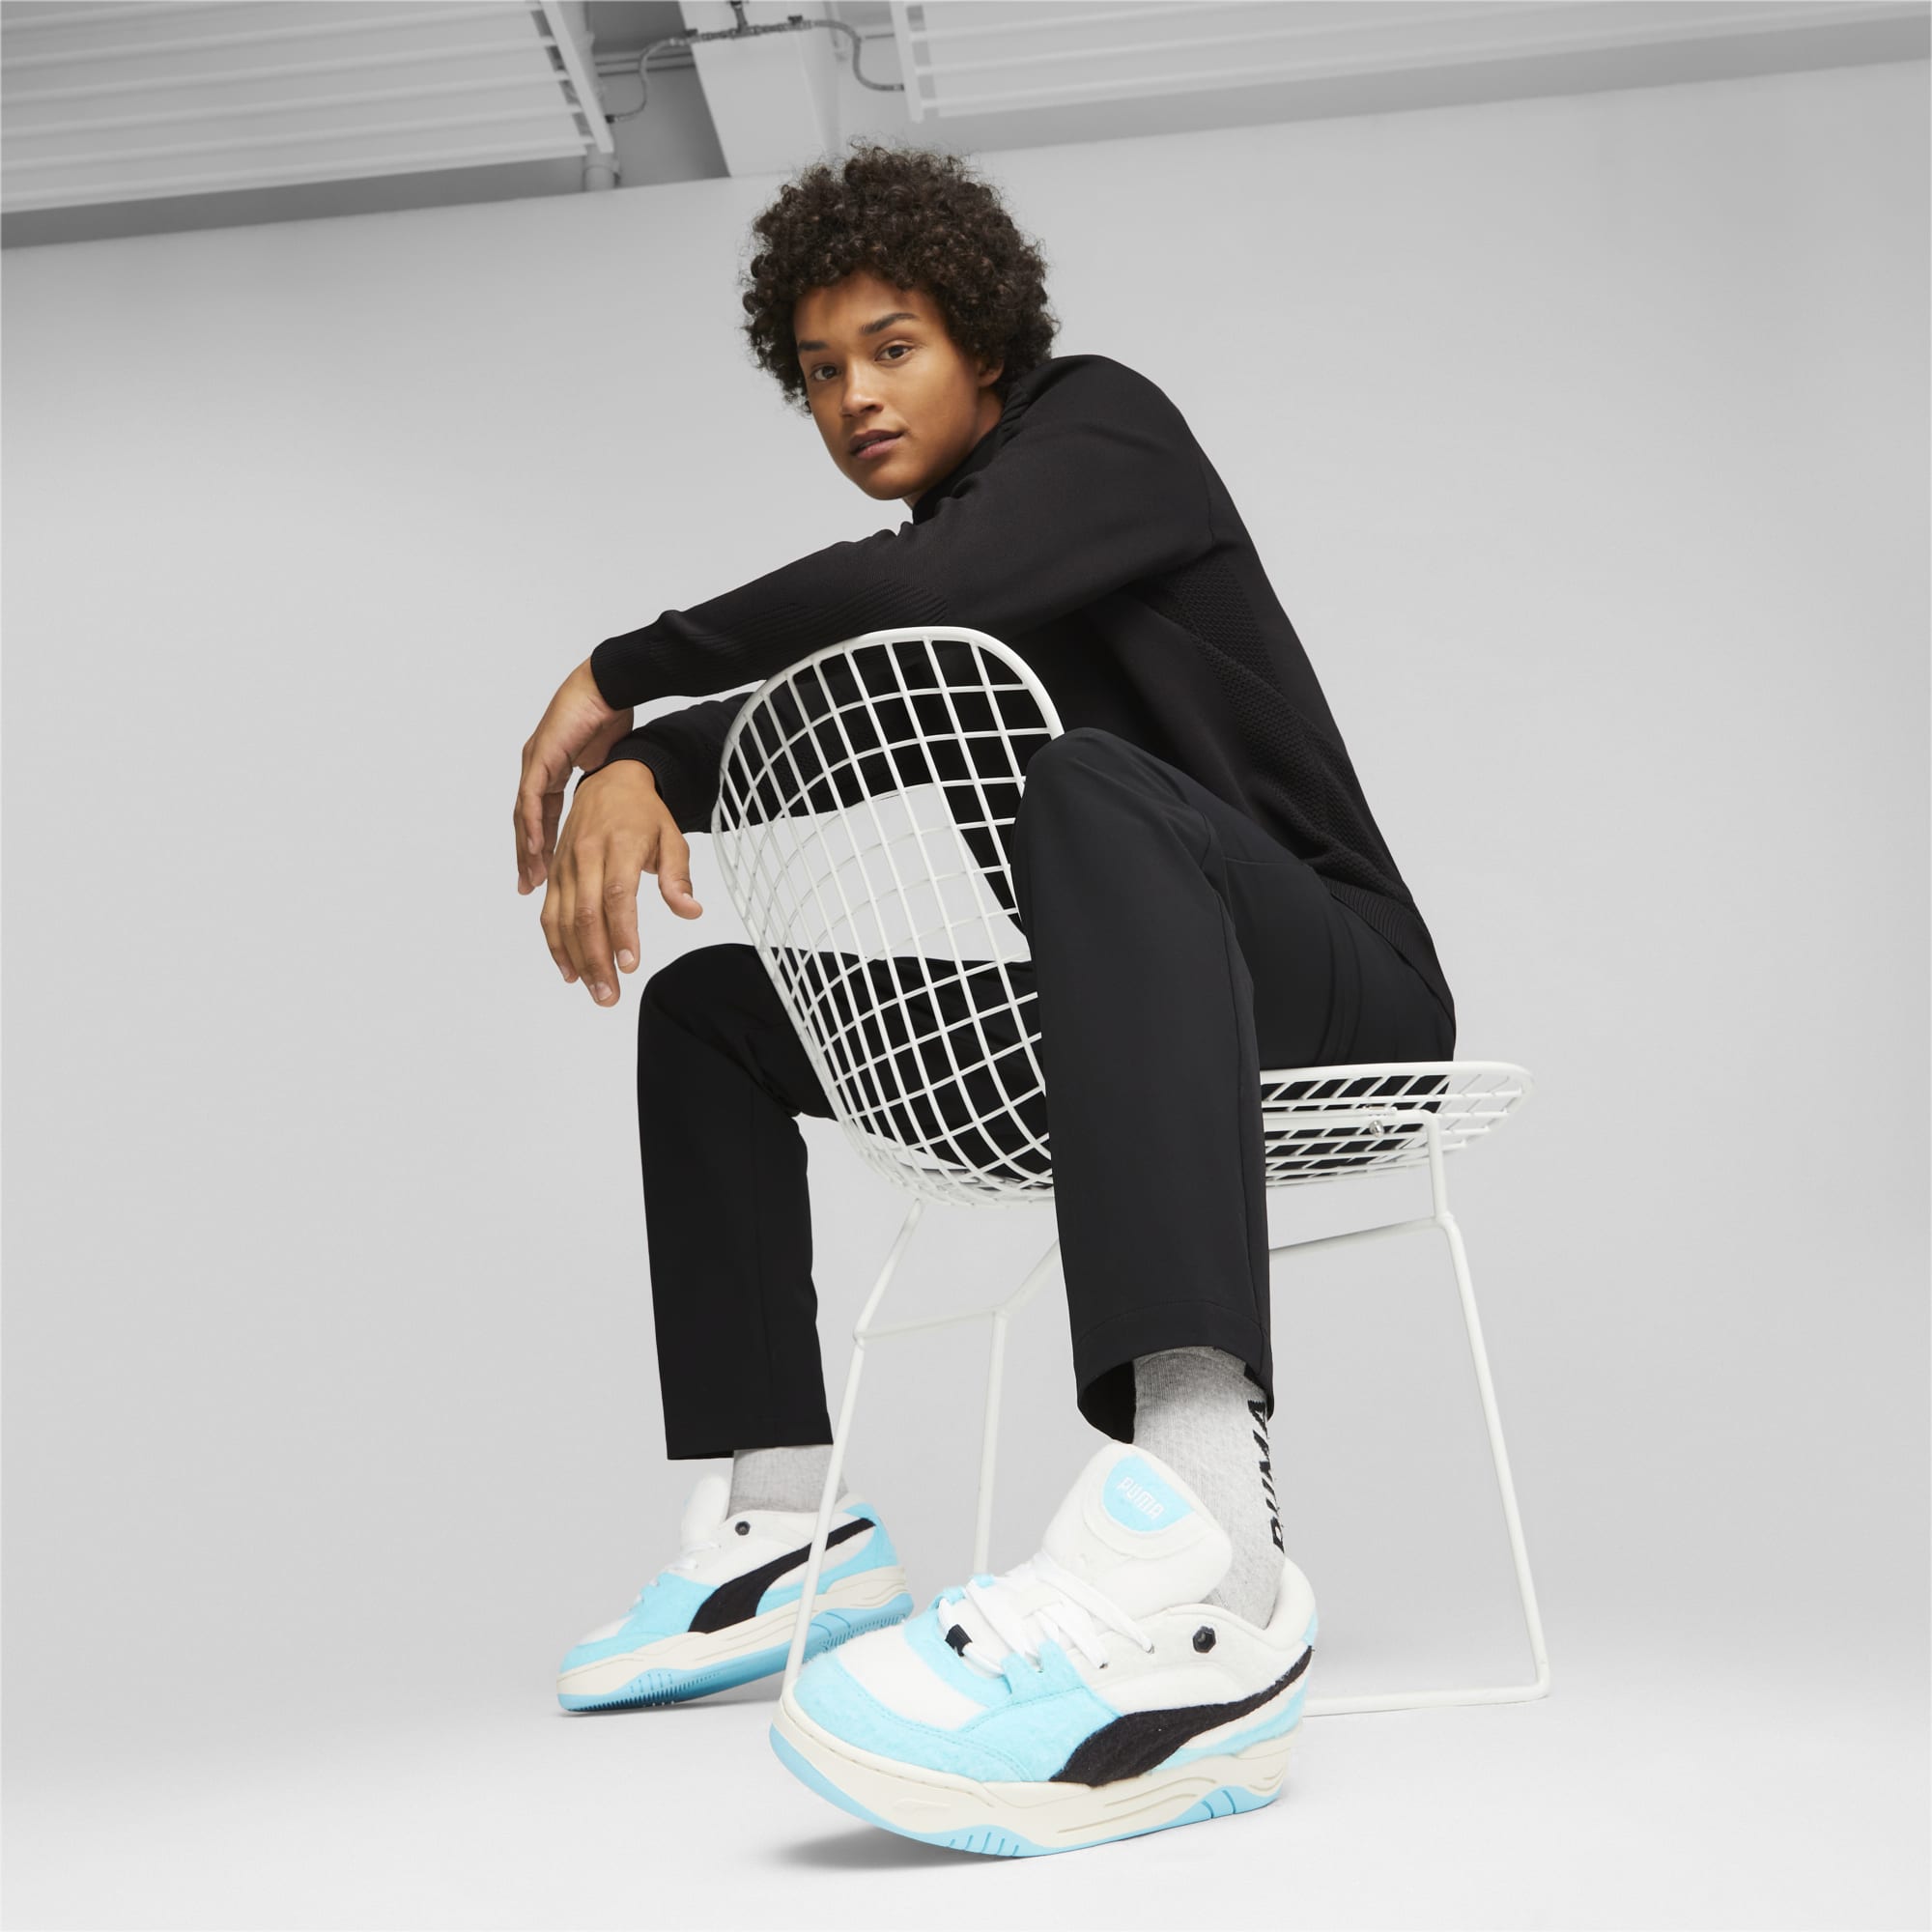 Chaussure Sneakers PUMA-180 Felt Pour Femme, Blanc